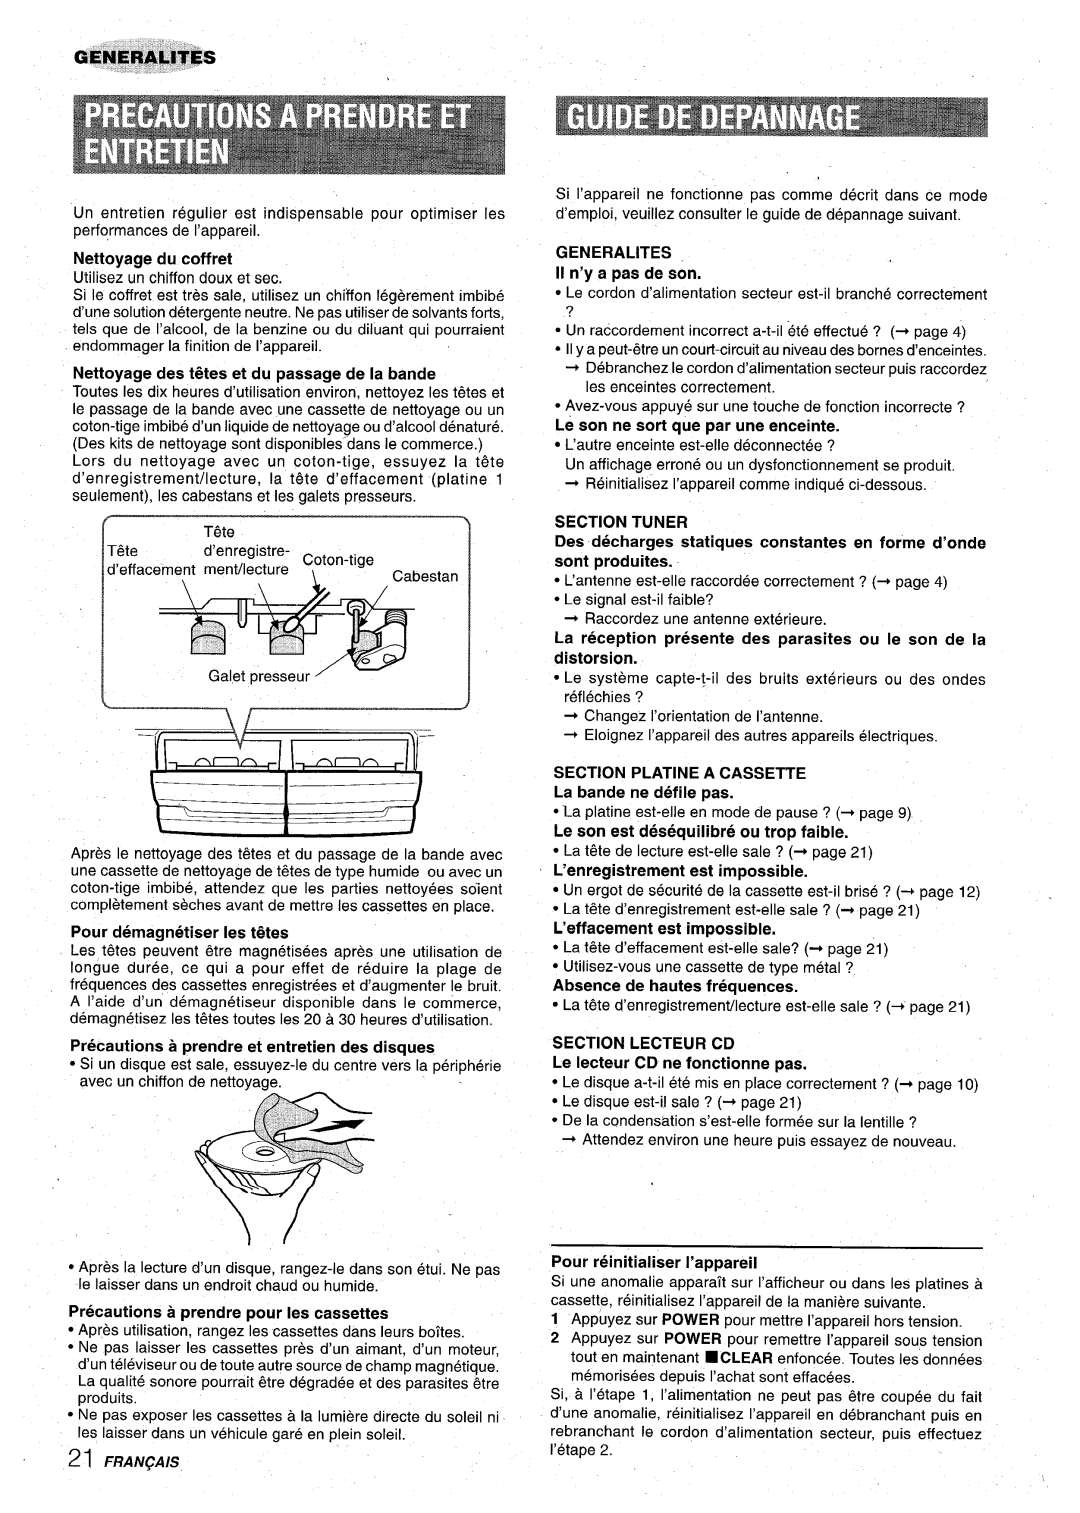 Aiwa Z-VR55 manual Nettoyage des t~tes et du passage de la bande, Pour demagnetiser Ies t~tes, II n’y a pas de son 